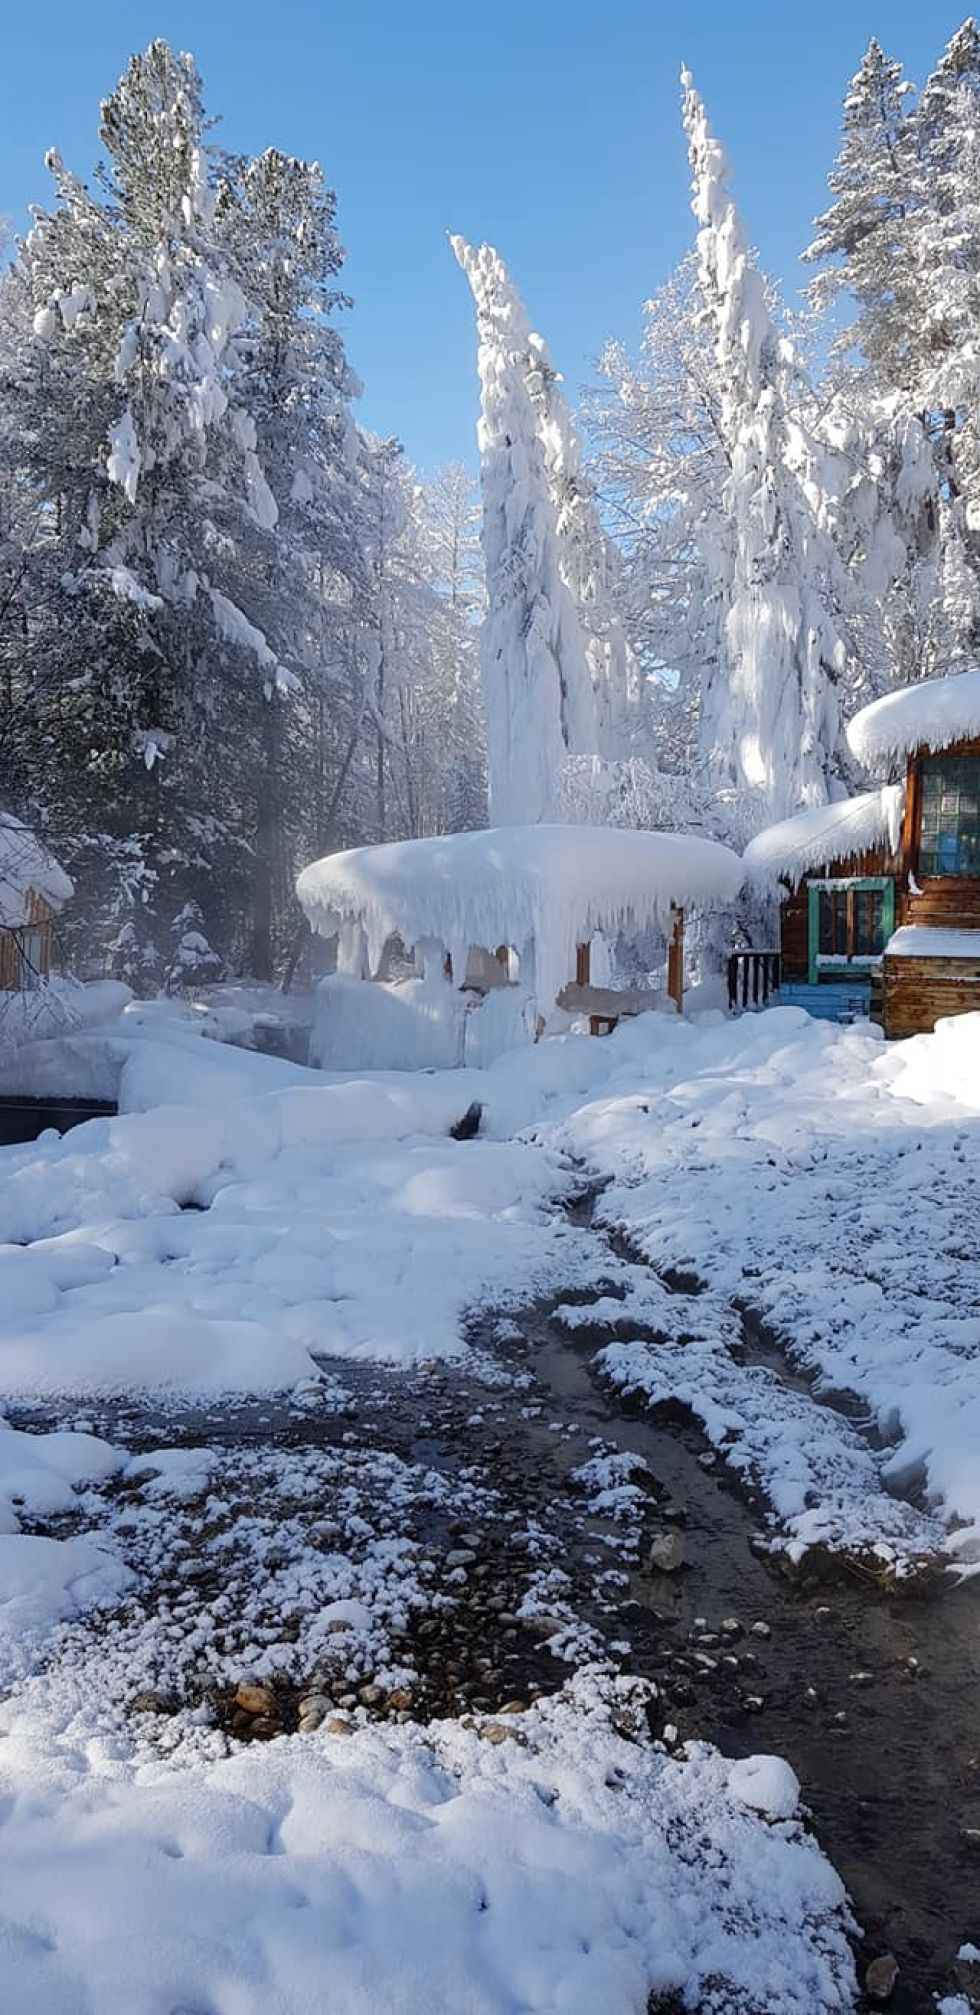 śnieżna pokrywa w okolicach syberii w rosji